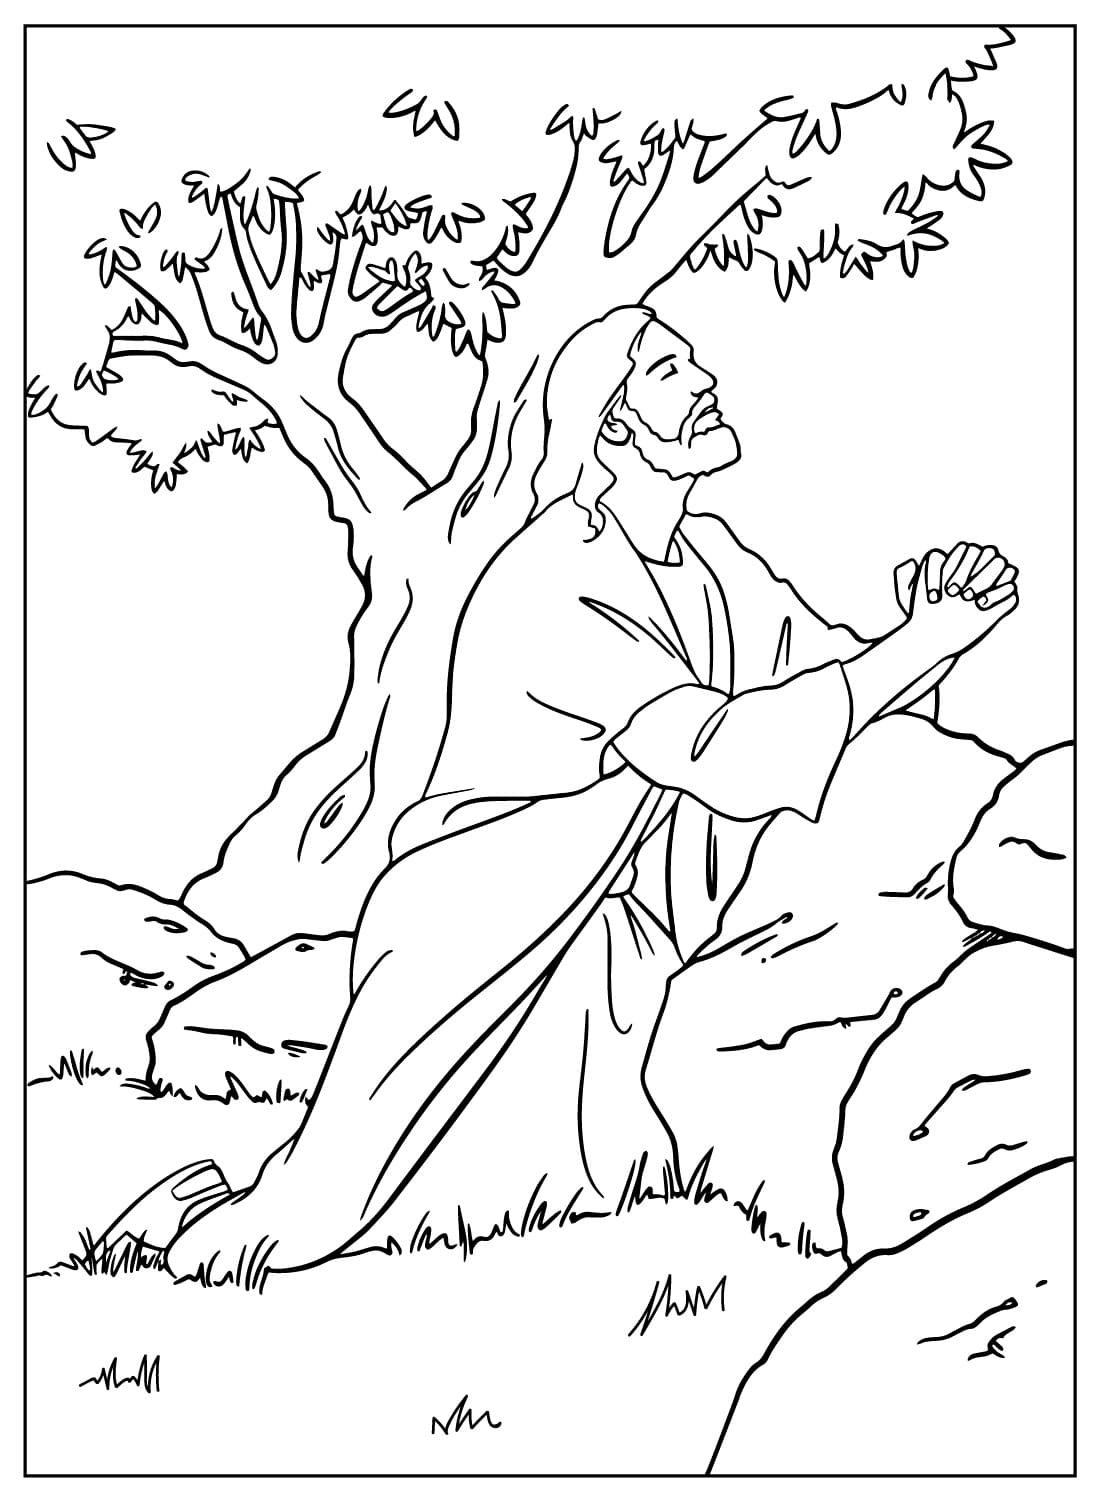 Jezus bidt in de tuin van Gethsemane from Jezus